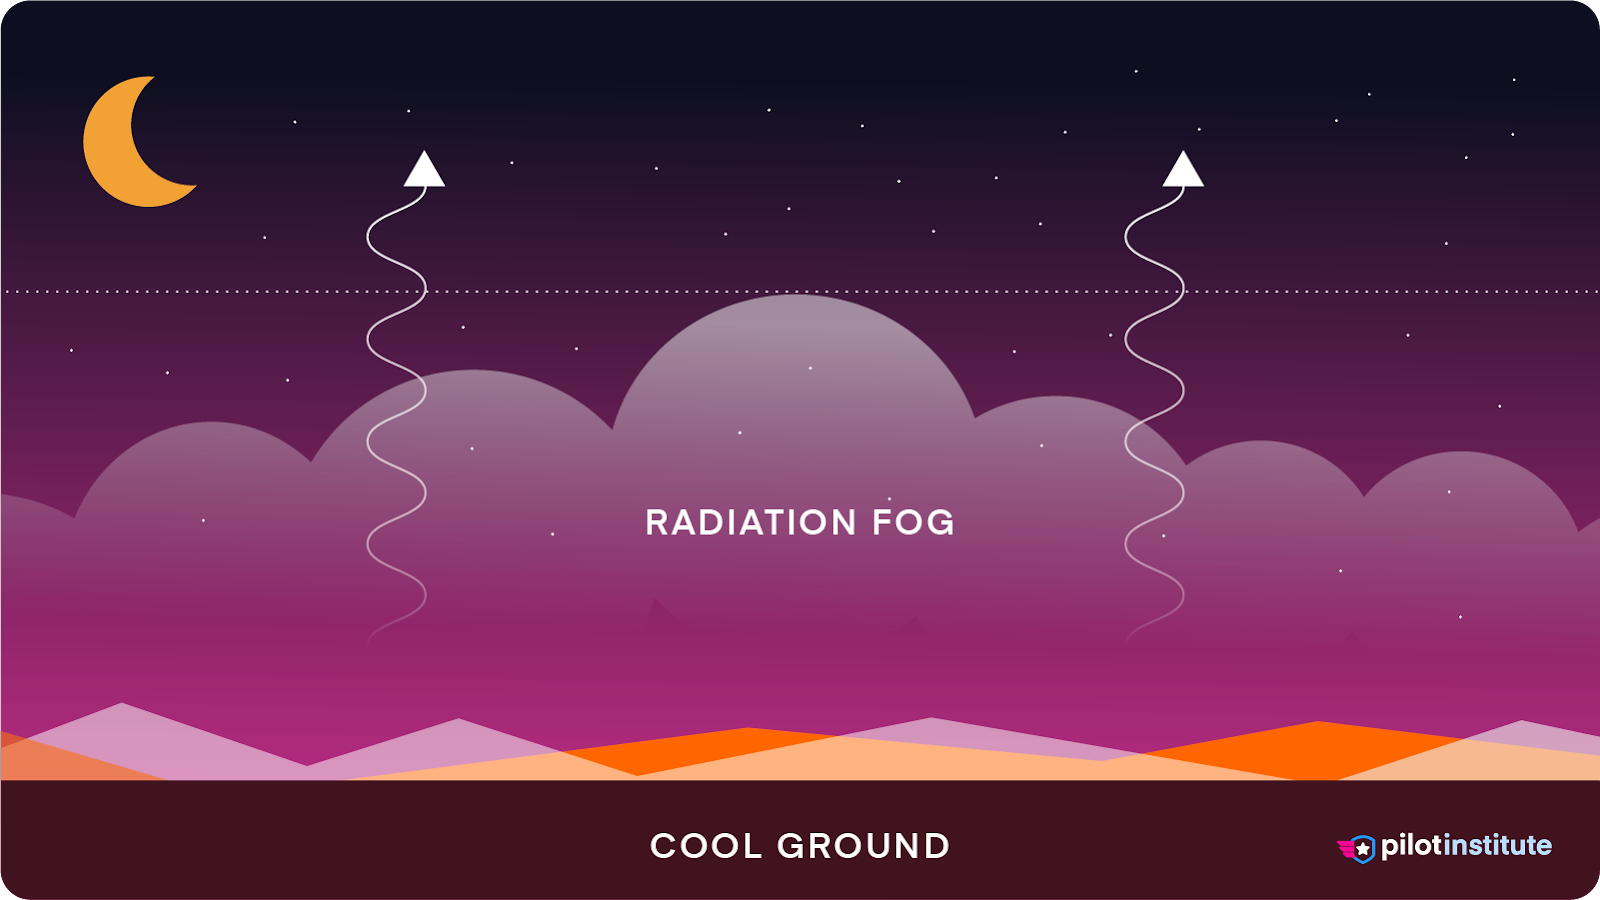 A diagram depicting radiation fog.